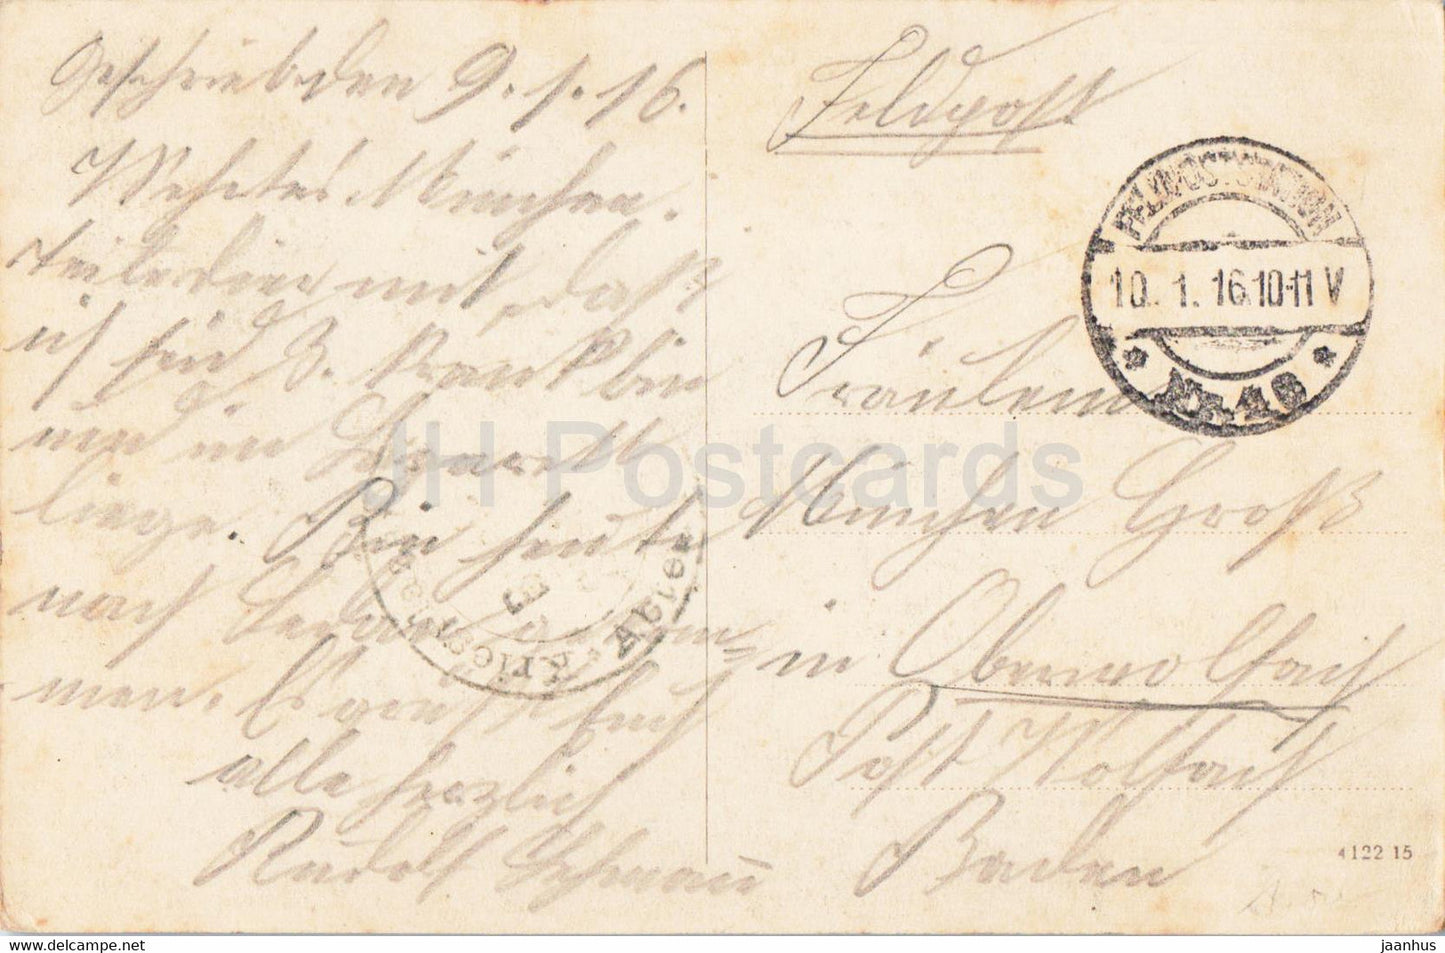 Sedan - Fortifications de l'ancienne Citadelle - Feldpost - courrier militaire - carte postale ancienne - 1916 - France - utilisé